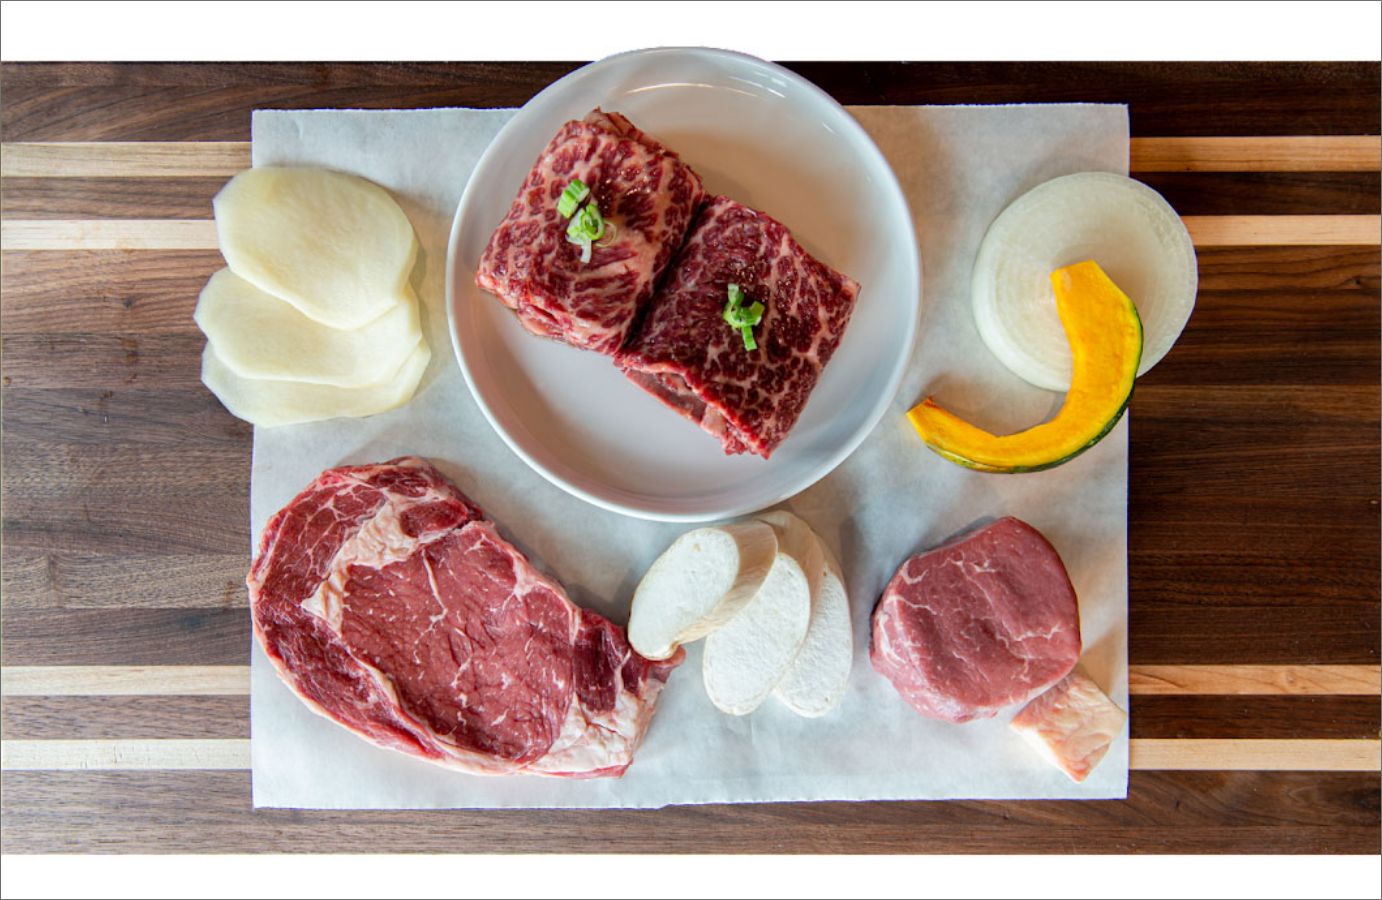 Raw Korean Beef platter, top view